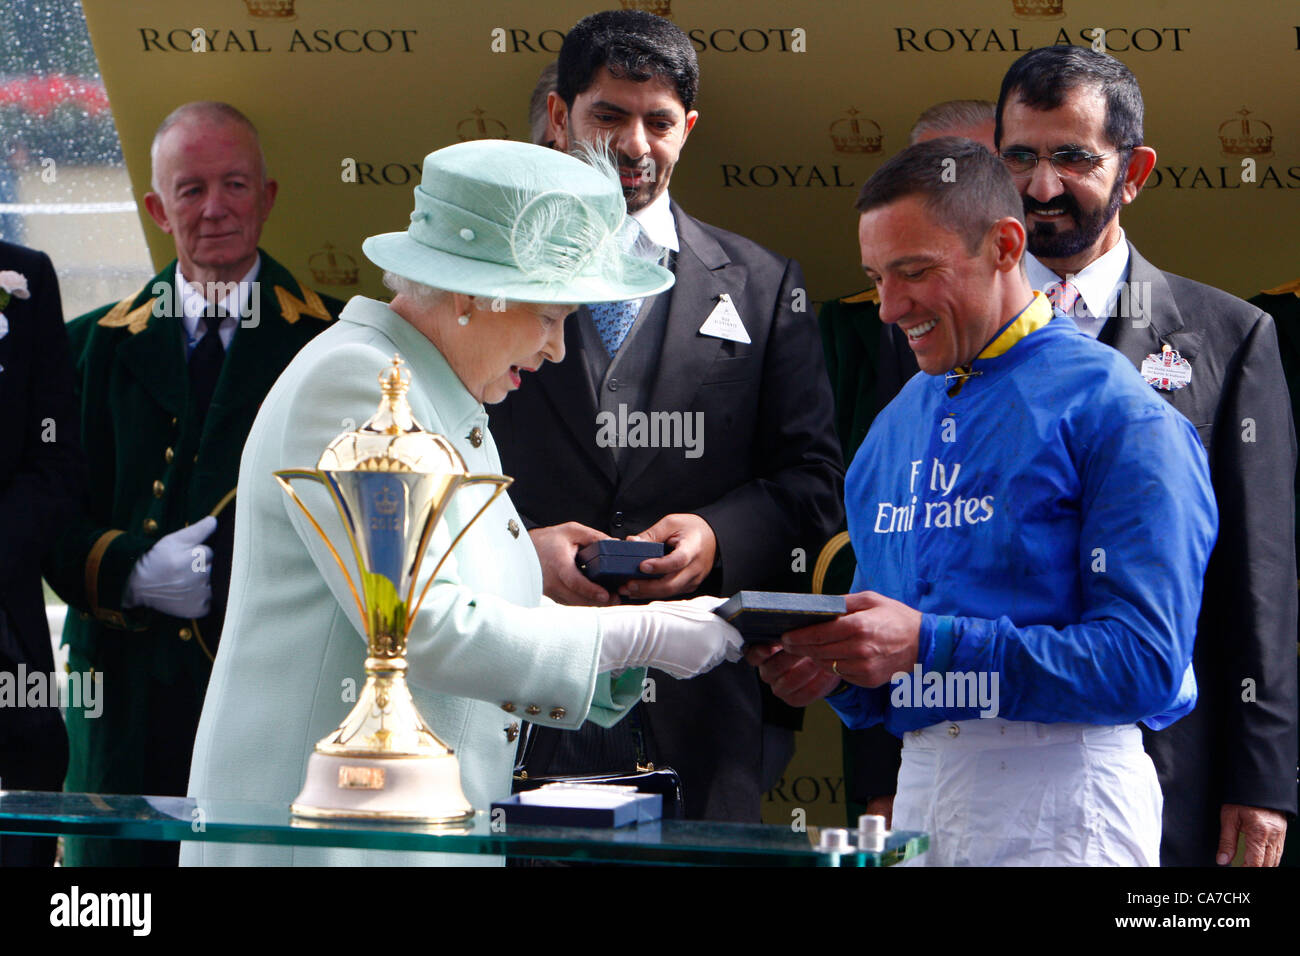 21.06.12 Ascot, Windsor, ENGLAND: Königin Elizabeth II präsentiert Frankie Dettori den Pokal für den Gewinn der Gold Cup während der Ladies Day Royal Ascot Festival auf dem Ascot Racecourse am 21. Juni 2012 in Ascot, England. Stockfoto